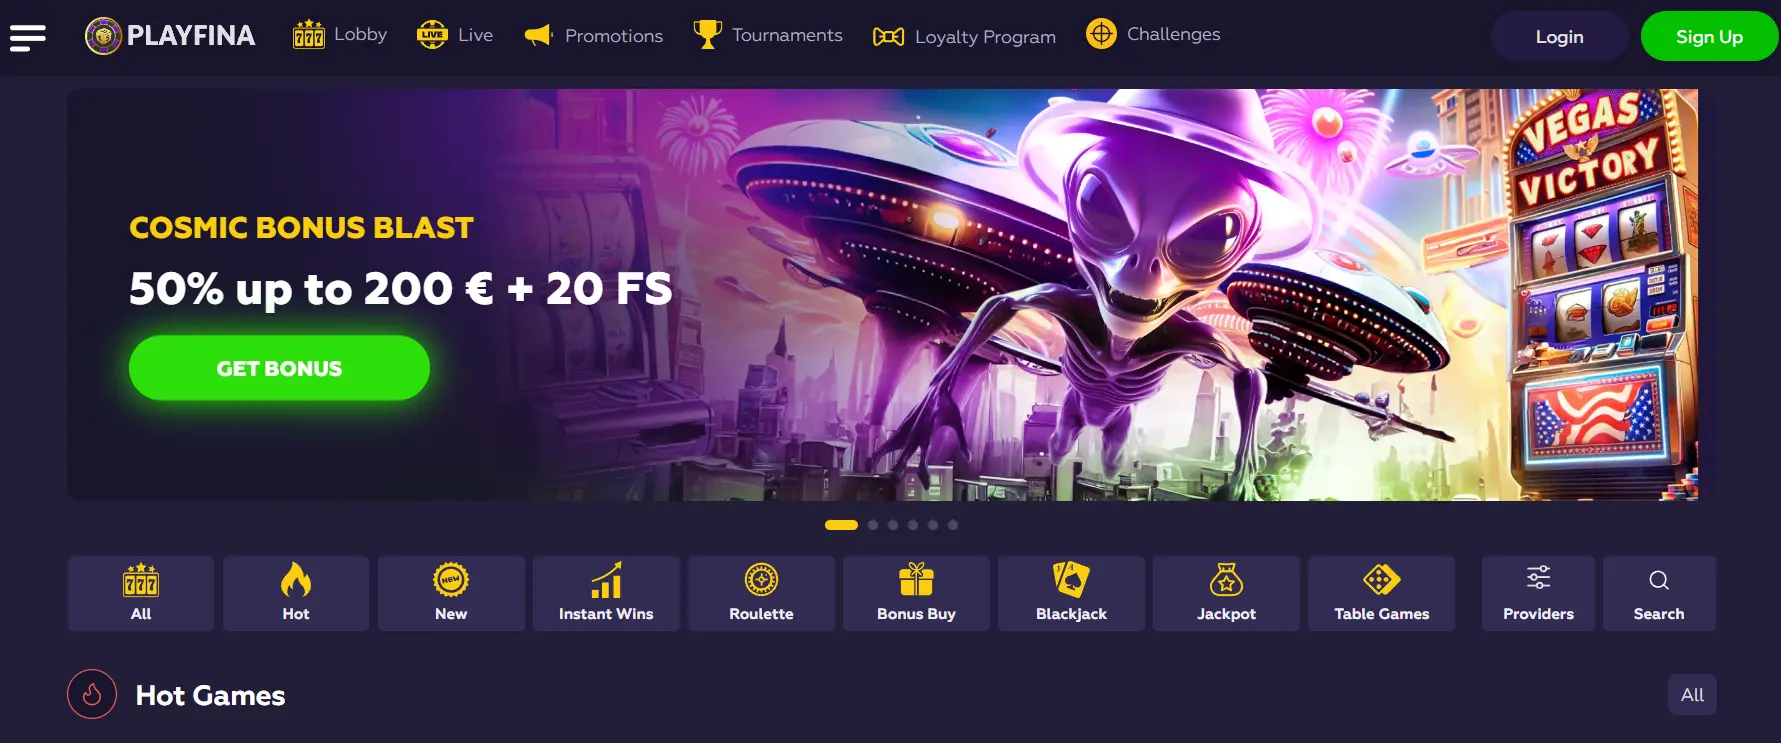 Playfina casino home page